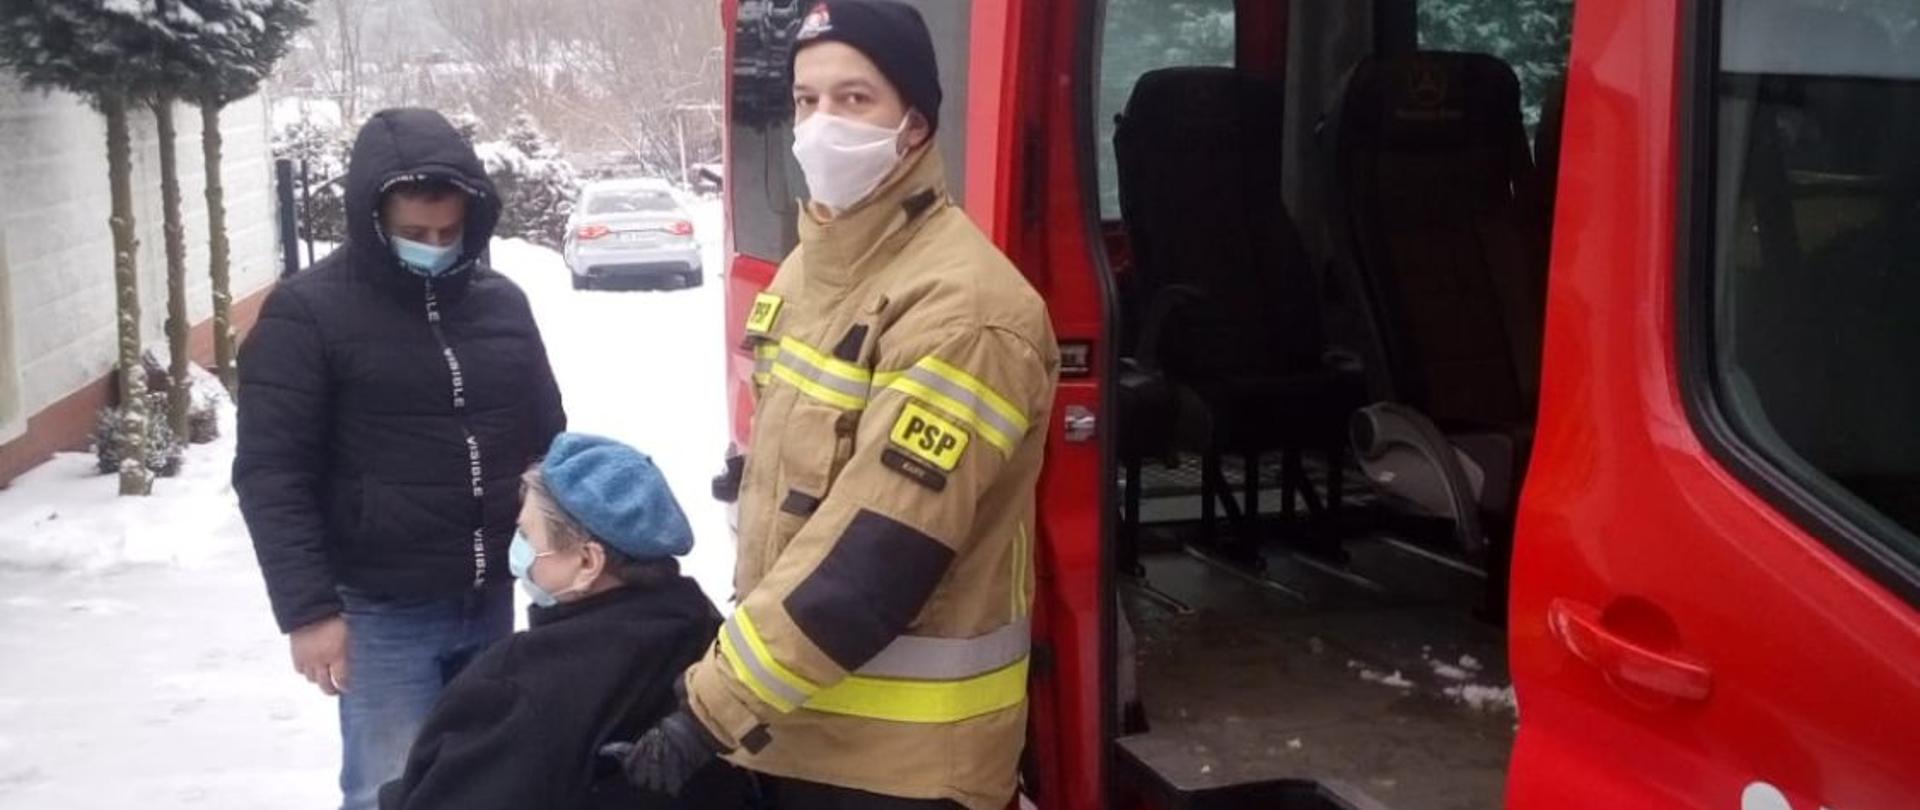 Na zdjęciu strażak z Jednostki Ratowniczo-gaśniczej w Żarach pomaga osobie na wózku inwalidzkim dotrzeć do punktu szczepień przeciw Covid-19. Z lewej strony zdjęcia znajduje się czerwony samochód strażacki typu bus. 